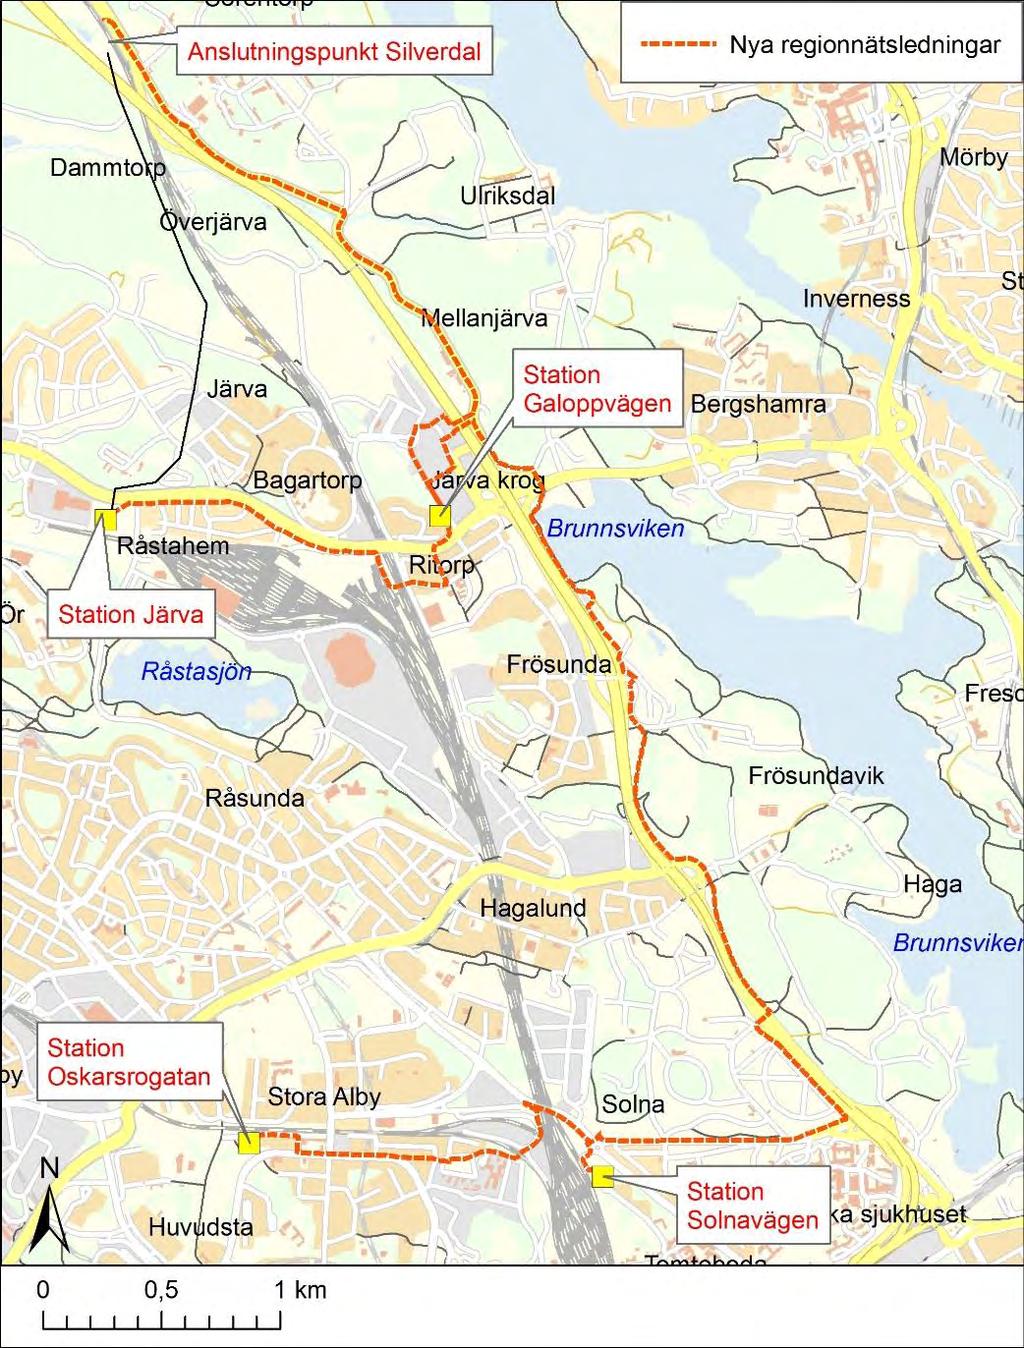 1.1.2 Södra Solna Inom delprojektet Södra Solna planeras två nya regionnätsledningar till södra Solna.